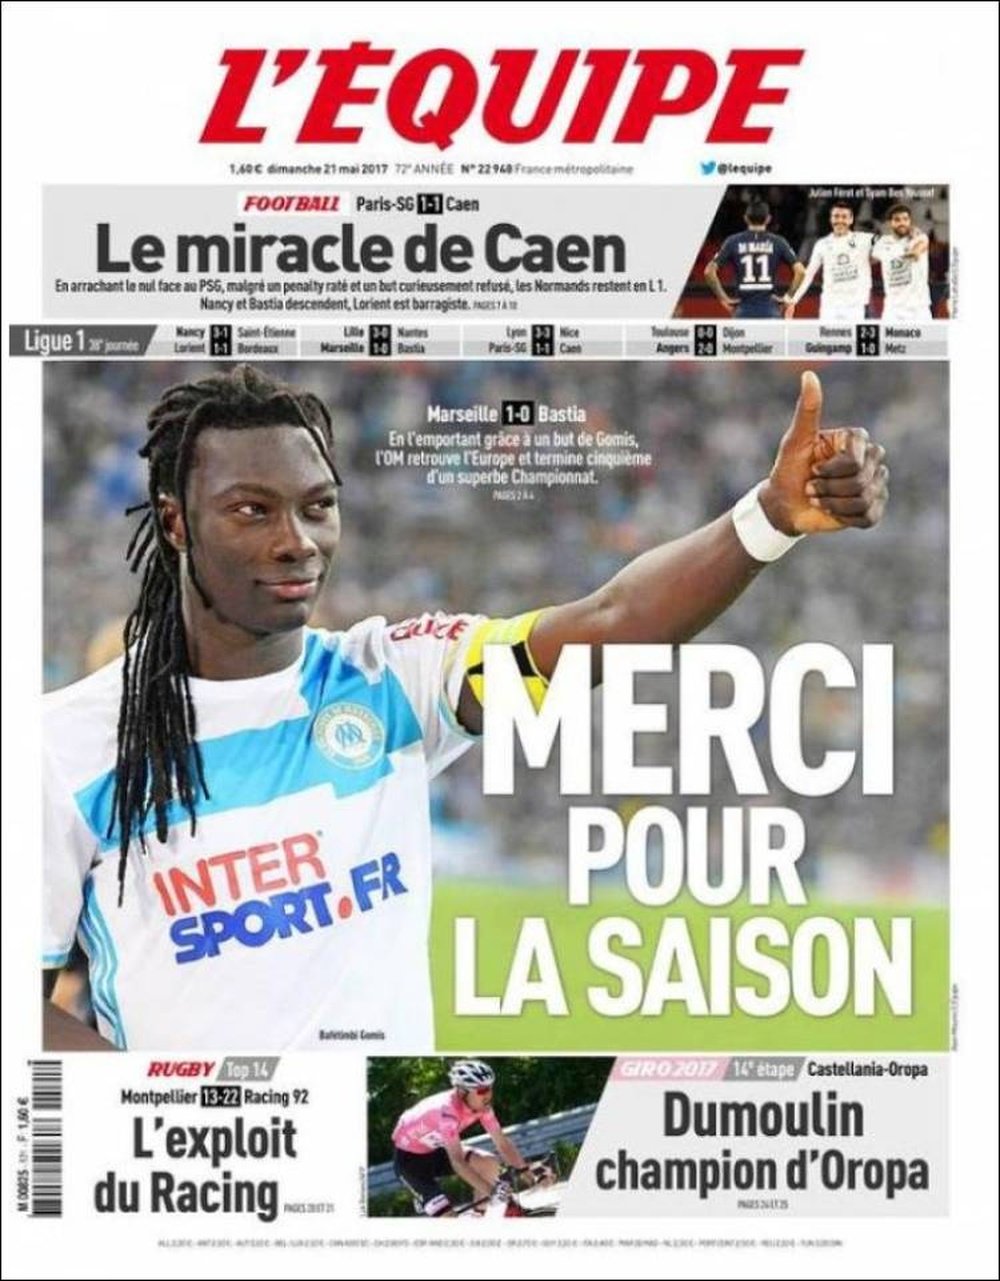 La Une du quotidien sportif français 'L'Équipe' du 21 mai 2017. L'Équipe